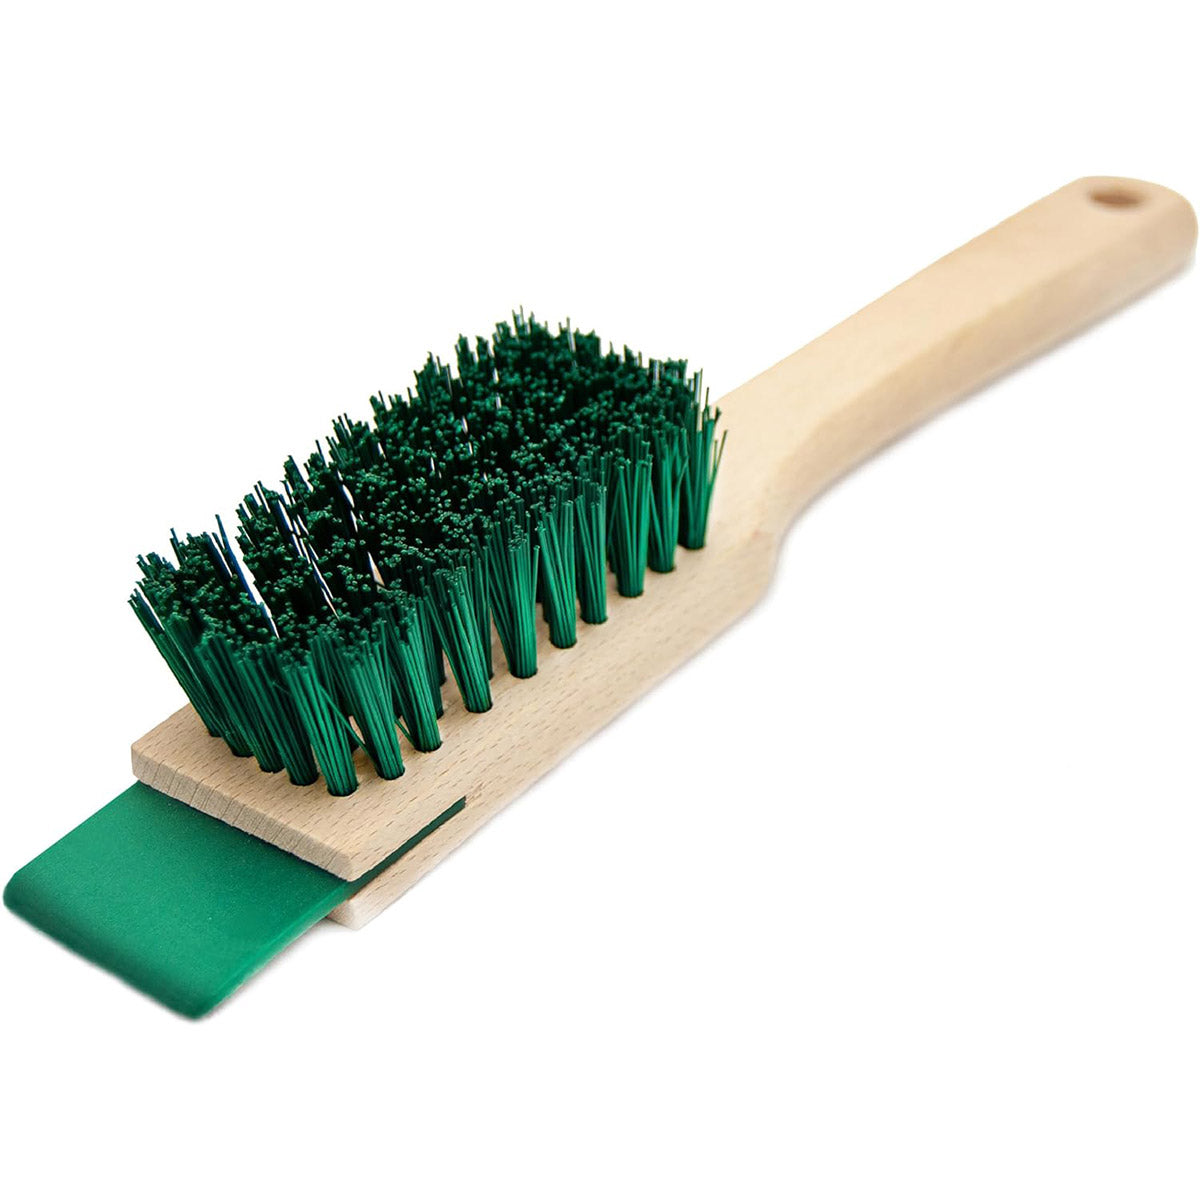 Stiff Bristle Brush with Scraper - Lawn Mower Deck Scraper